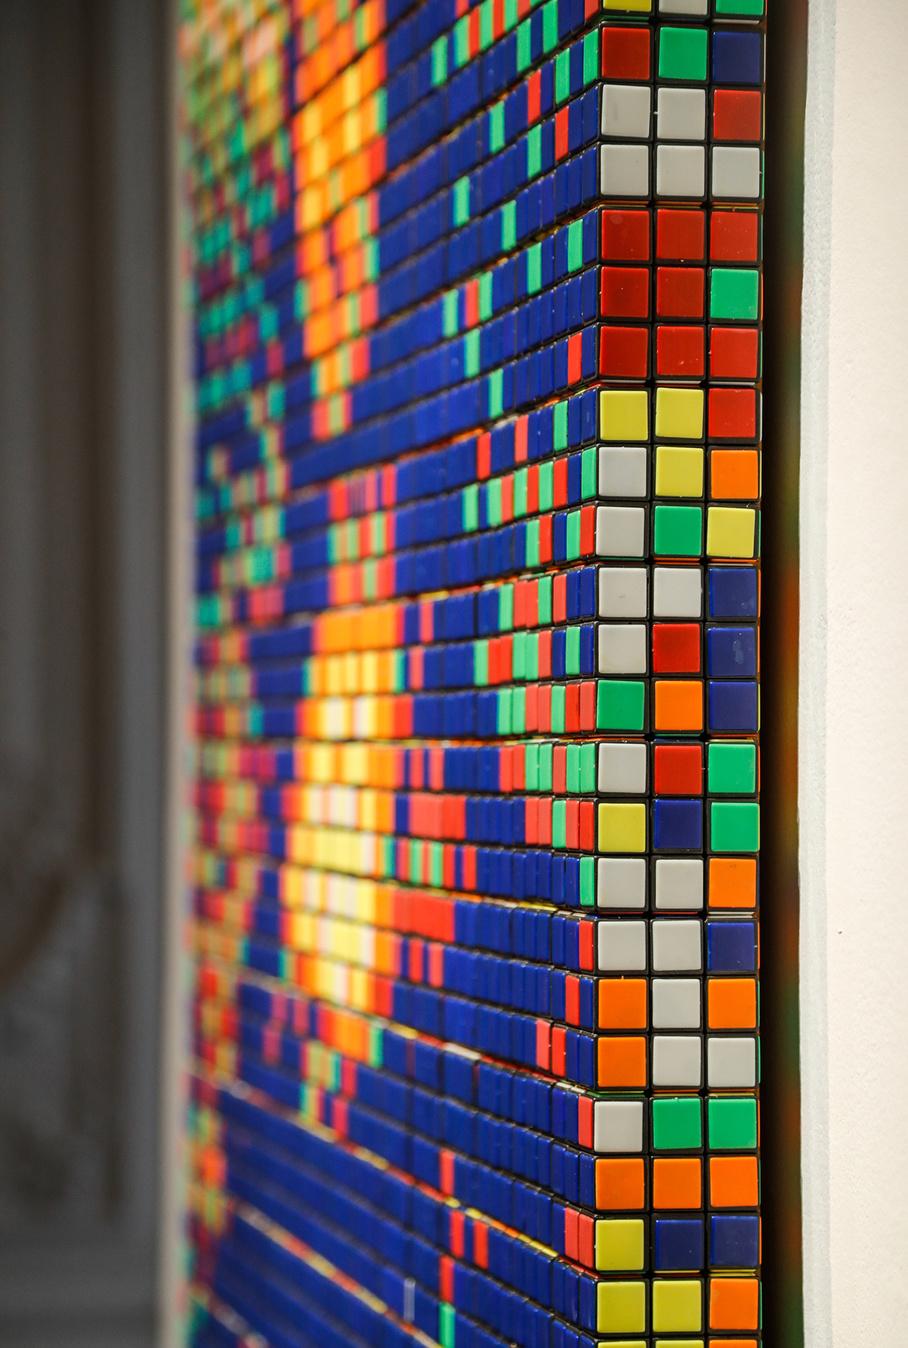 330 Rubik's Cubes ont été nécessaires pour la réalisation de cette Mona Lisa de l'artiste Invader.